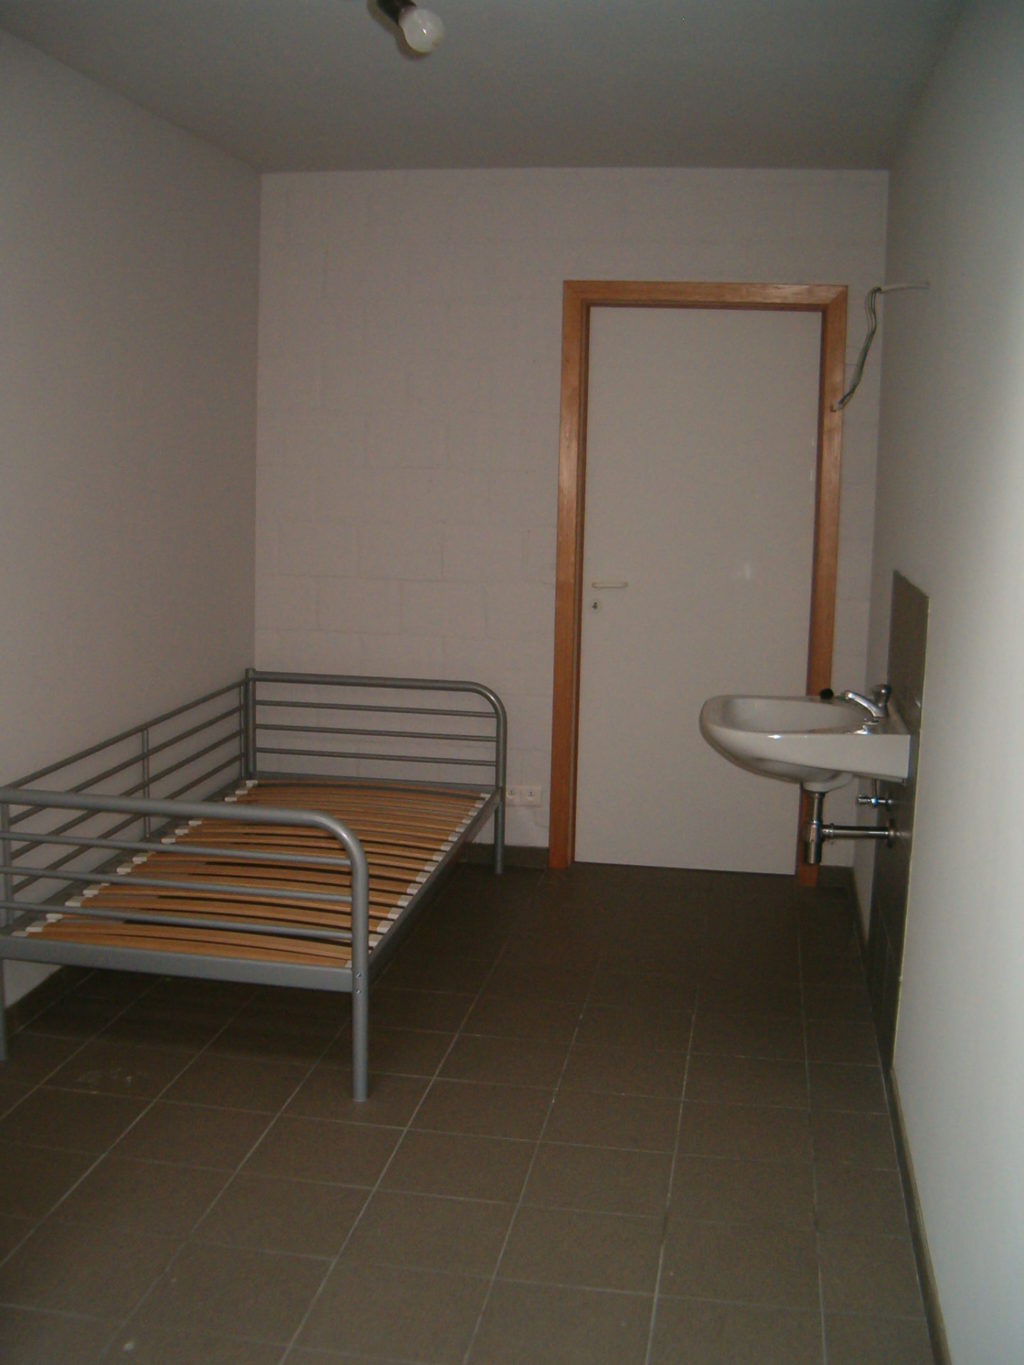 Wilgenstraat 49 - Kamer 5 - Bed, deur kamer en lavabo